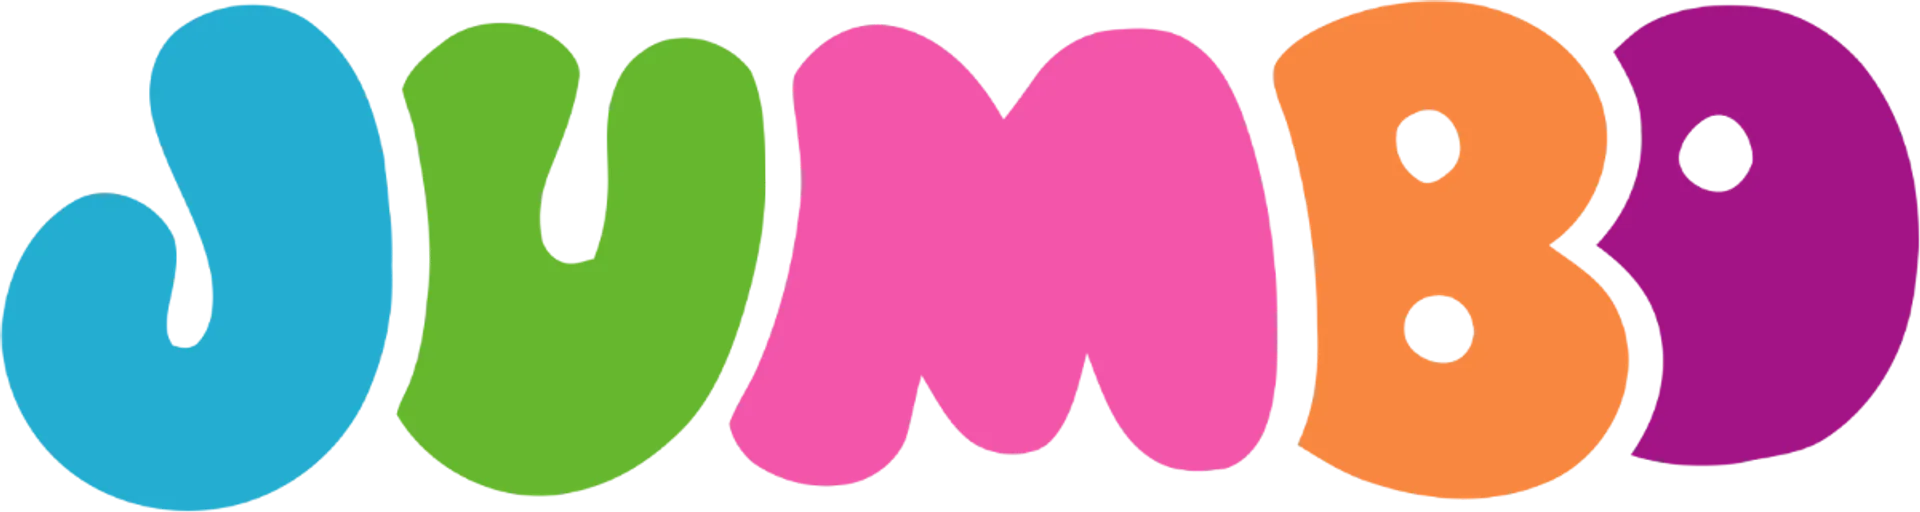 JUMBO logo